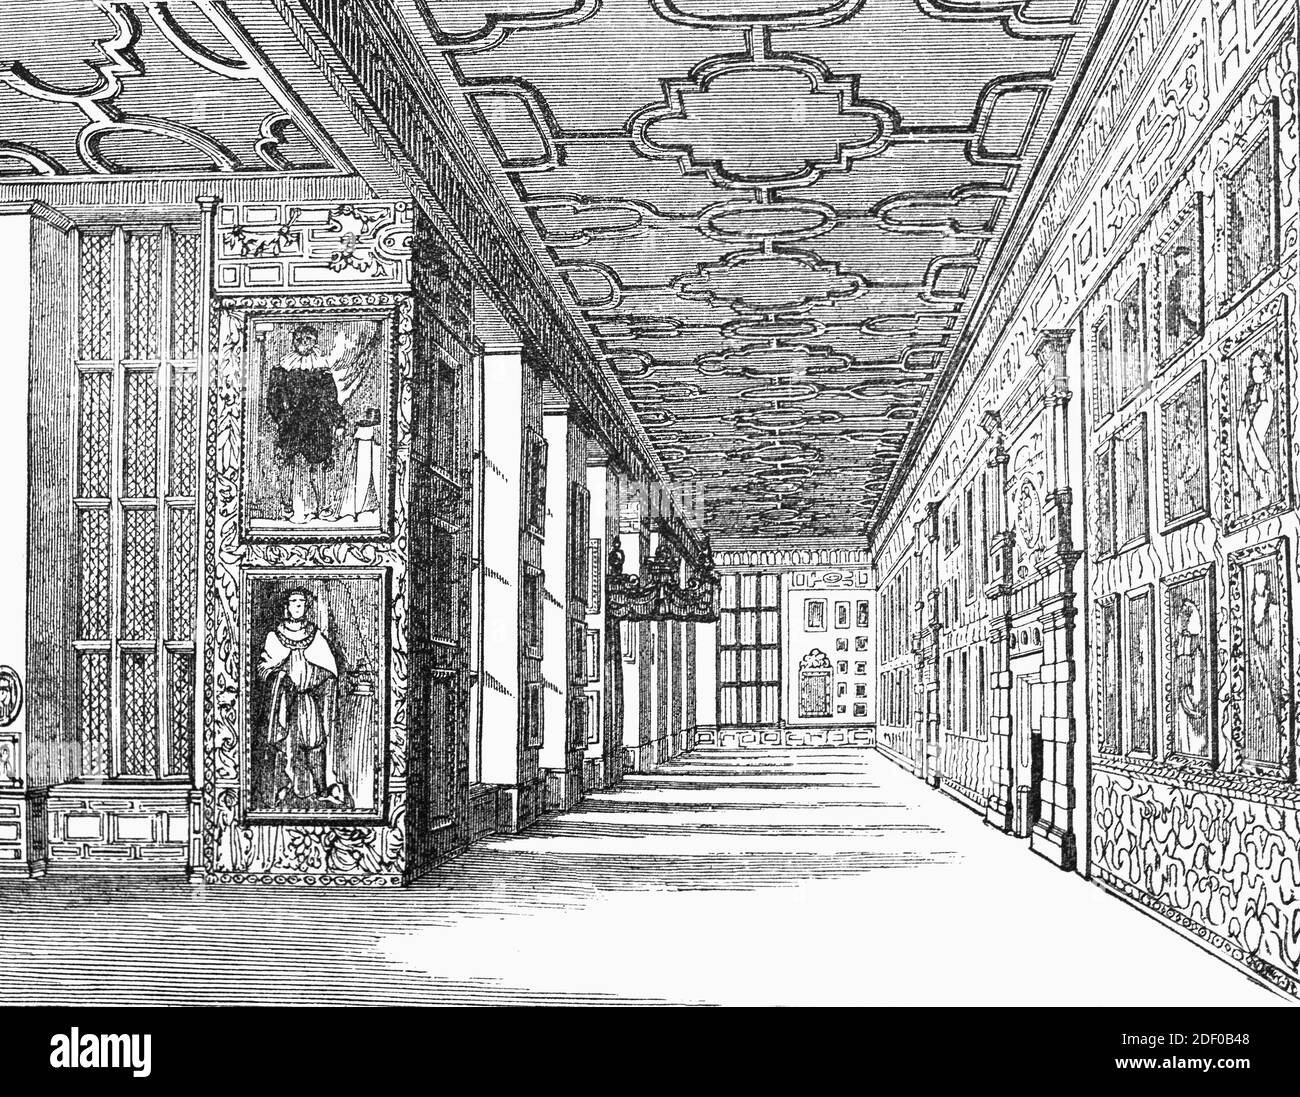 Una vista del 19 ° secolo della galleria ritratto in Hardwick Hall un esempio della casa di prodigio elisabettiano nel Derbyshire, Inghilterra. Fu costruito tra il 1590 e il 1597 per la formidabile Bess of Hardwick, la donna più ricca d'Inghilterra dopo la regina Elisabetta i, una dichiarazione cospicua della sua ricchezza e del suo potere. Dopo la morte di Bess nel 1608, la casa passò al figlio William Cavendish, i conte del Devonshire. I Devonshires hanno fatto Chatsworth, un'altra delle grandi case di Bess, la loro sede principale e Hardwick è stato relegato al ruolo di un ritiro occasionale per la caccia e un po 'di casa tower. Foto Stock